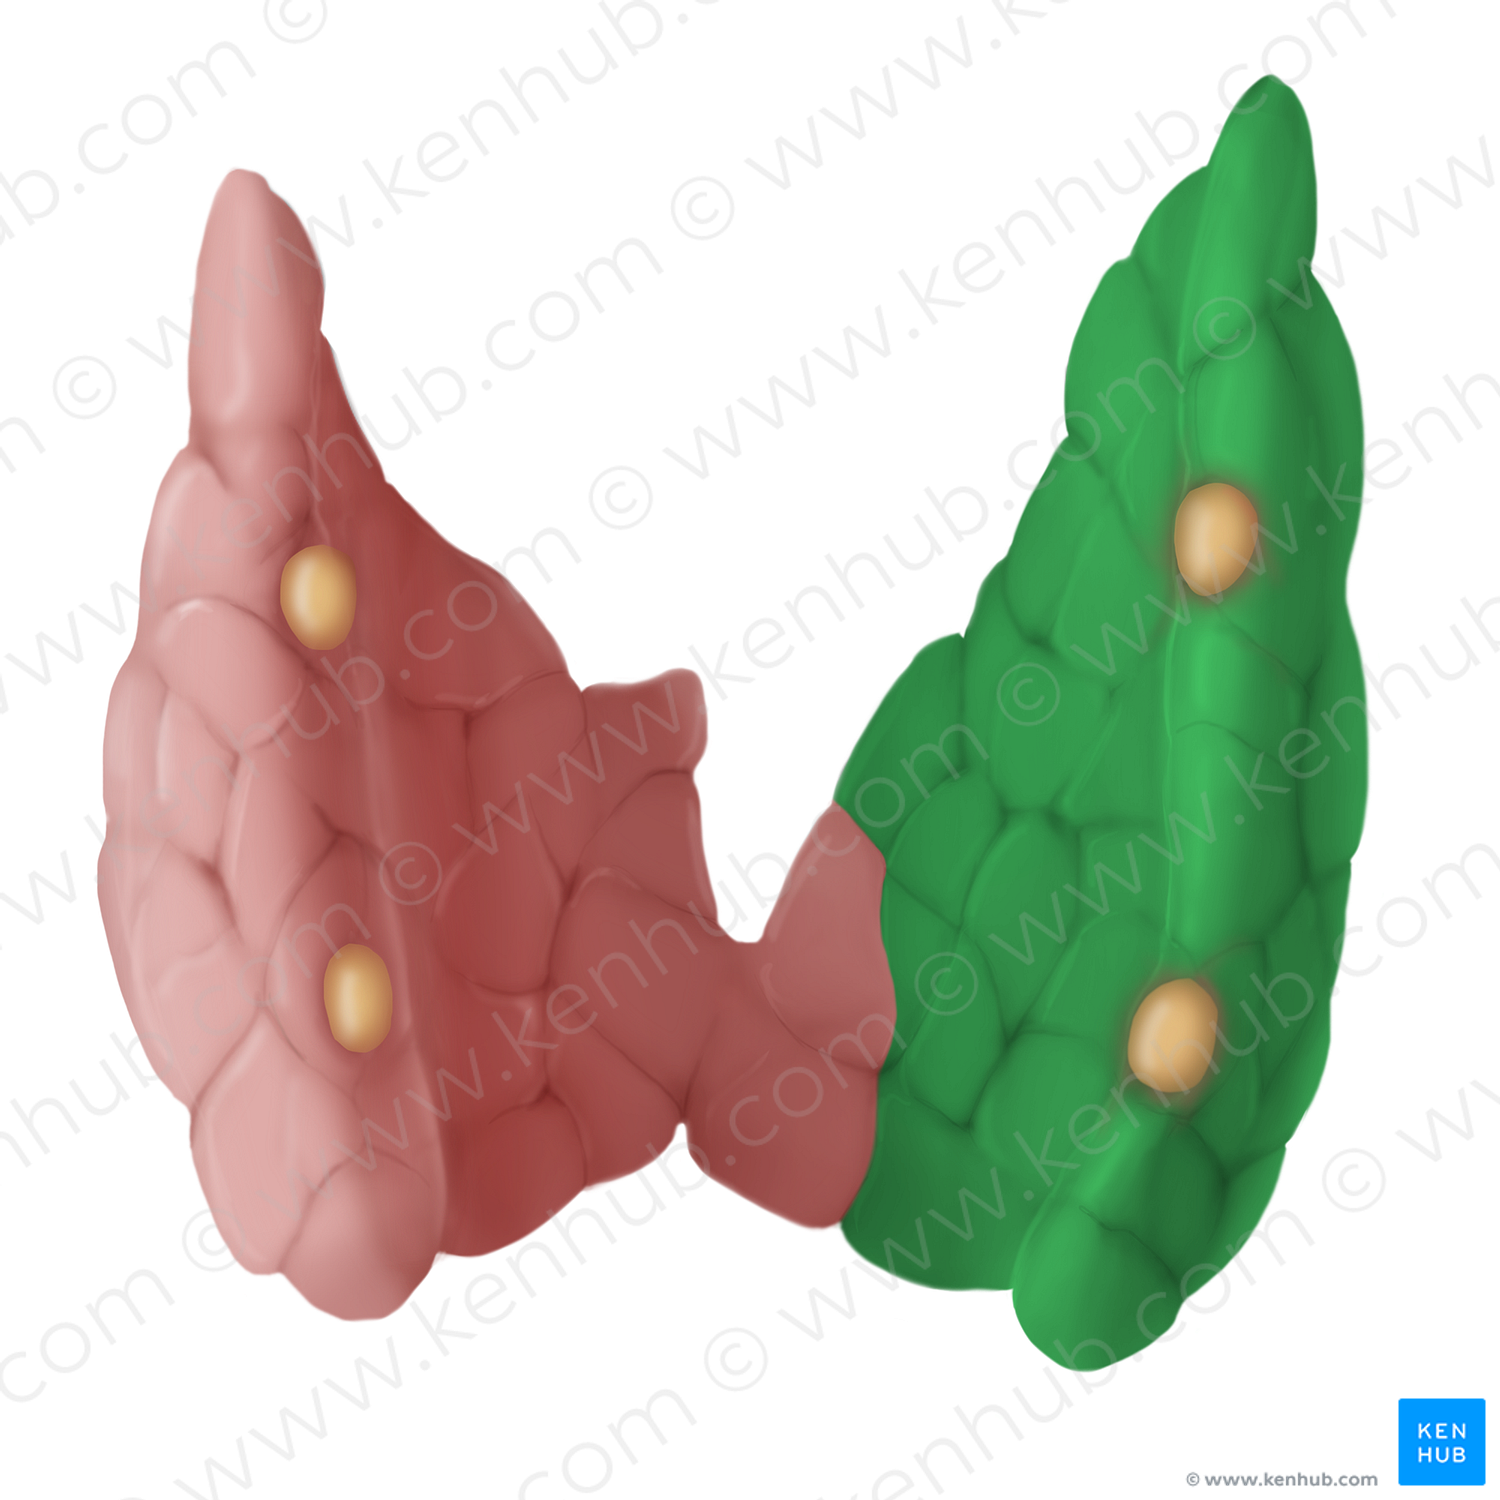 Right lobe of thyroid gland (#14114)